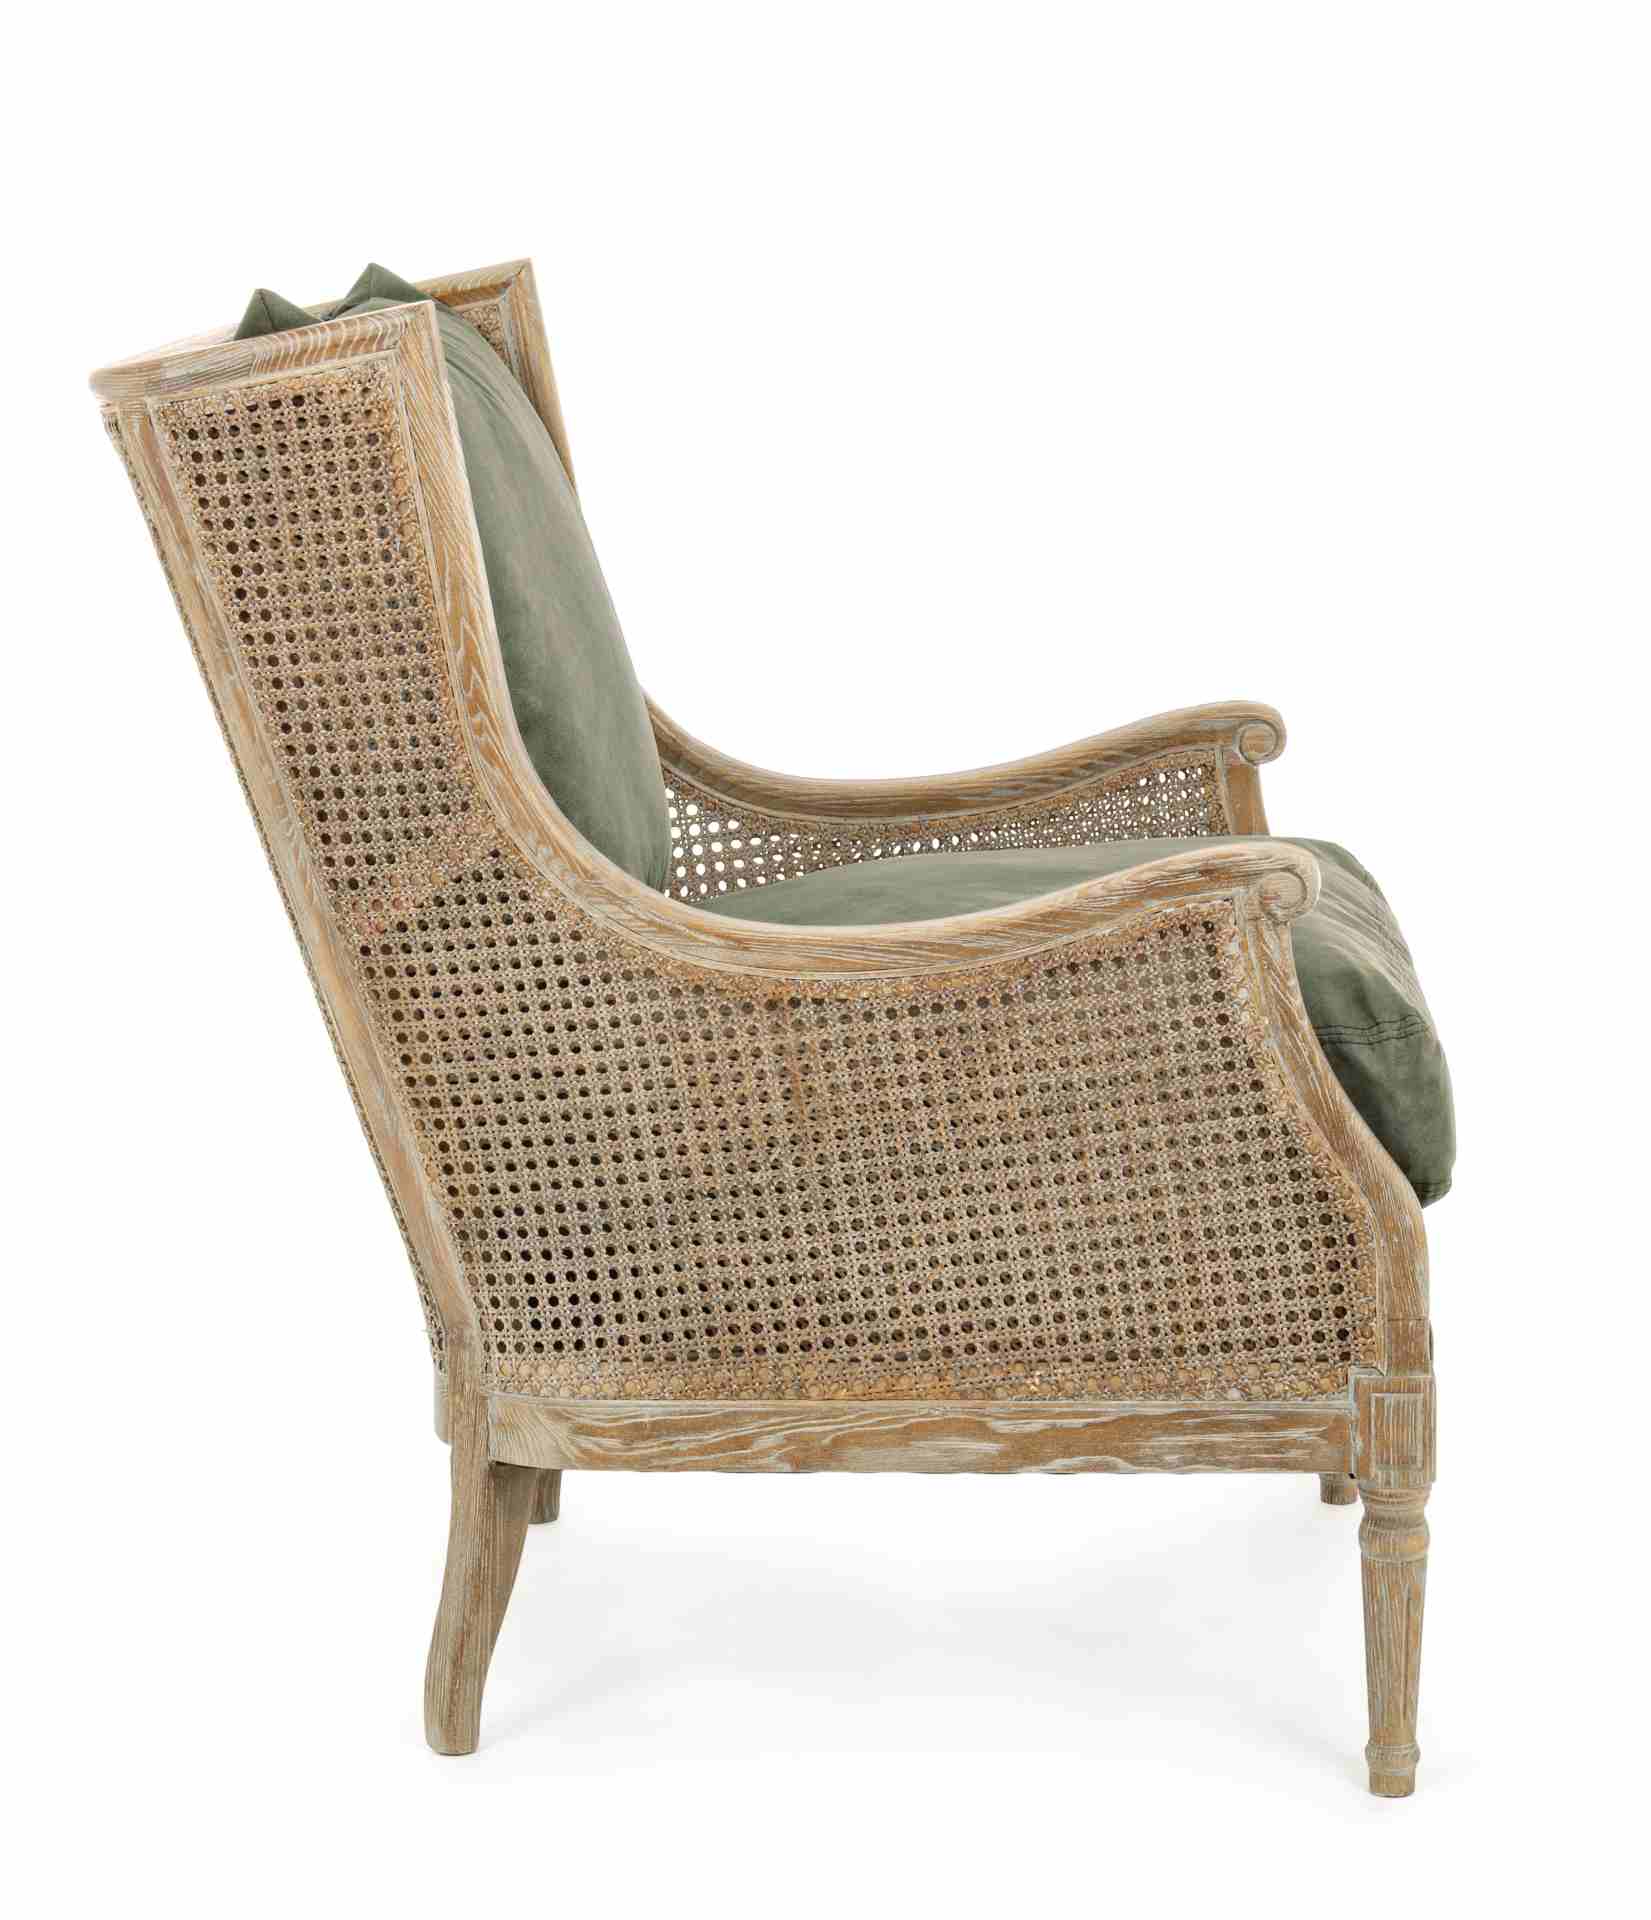 Der Sessel Carolina überzeugt mit seinem klassischen Design. Gefertigt wurde er aus Stoff, welcher einen grünen Farbton besitzt. Das Gestell ist aus Eschenholz und hat eine natürliche Farbe. Der Sessel besitzt eine Sitzhöhe von 48 cm. Die Breite beträgt 7